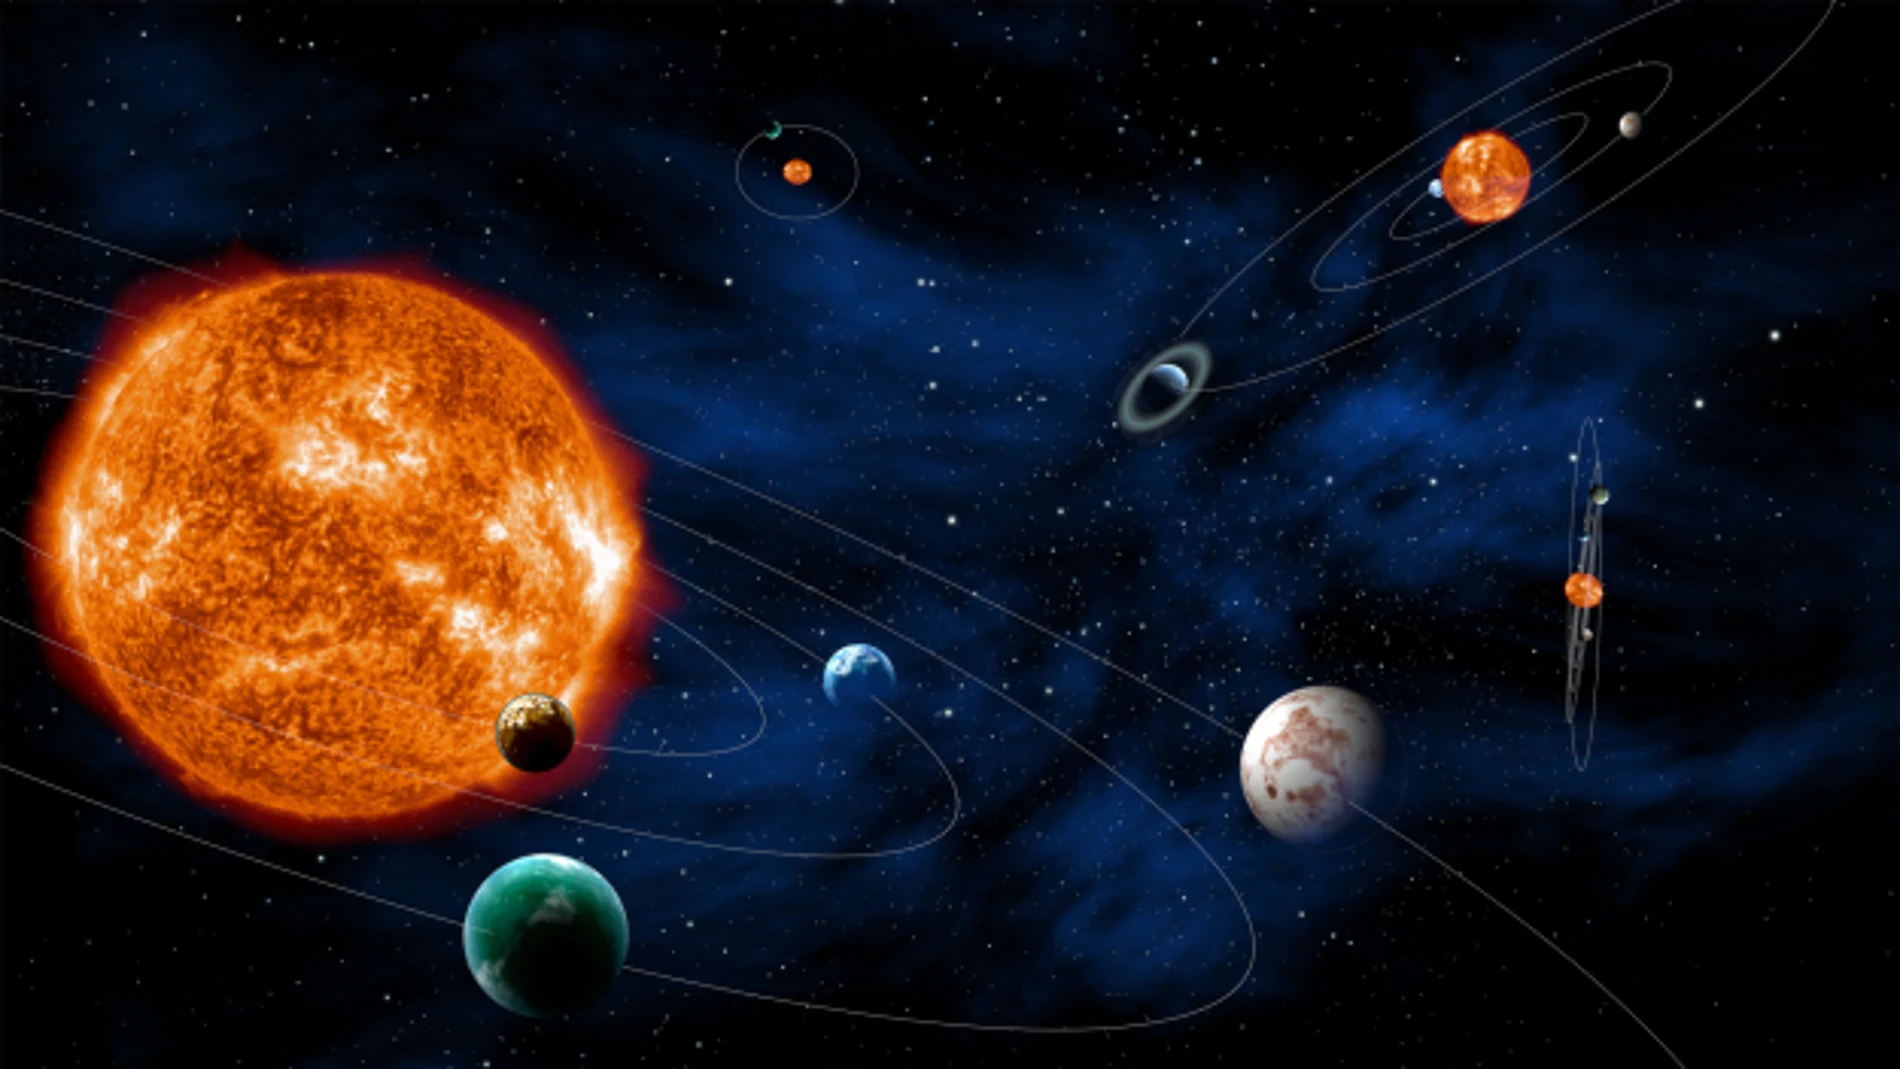 La Misión Plato de la ESA buscará planetas extrasolares como la Tierra